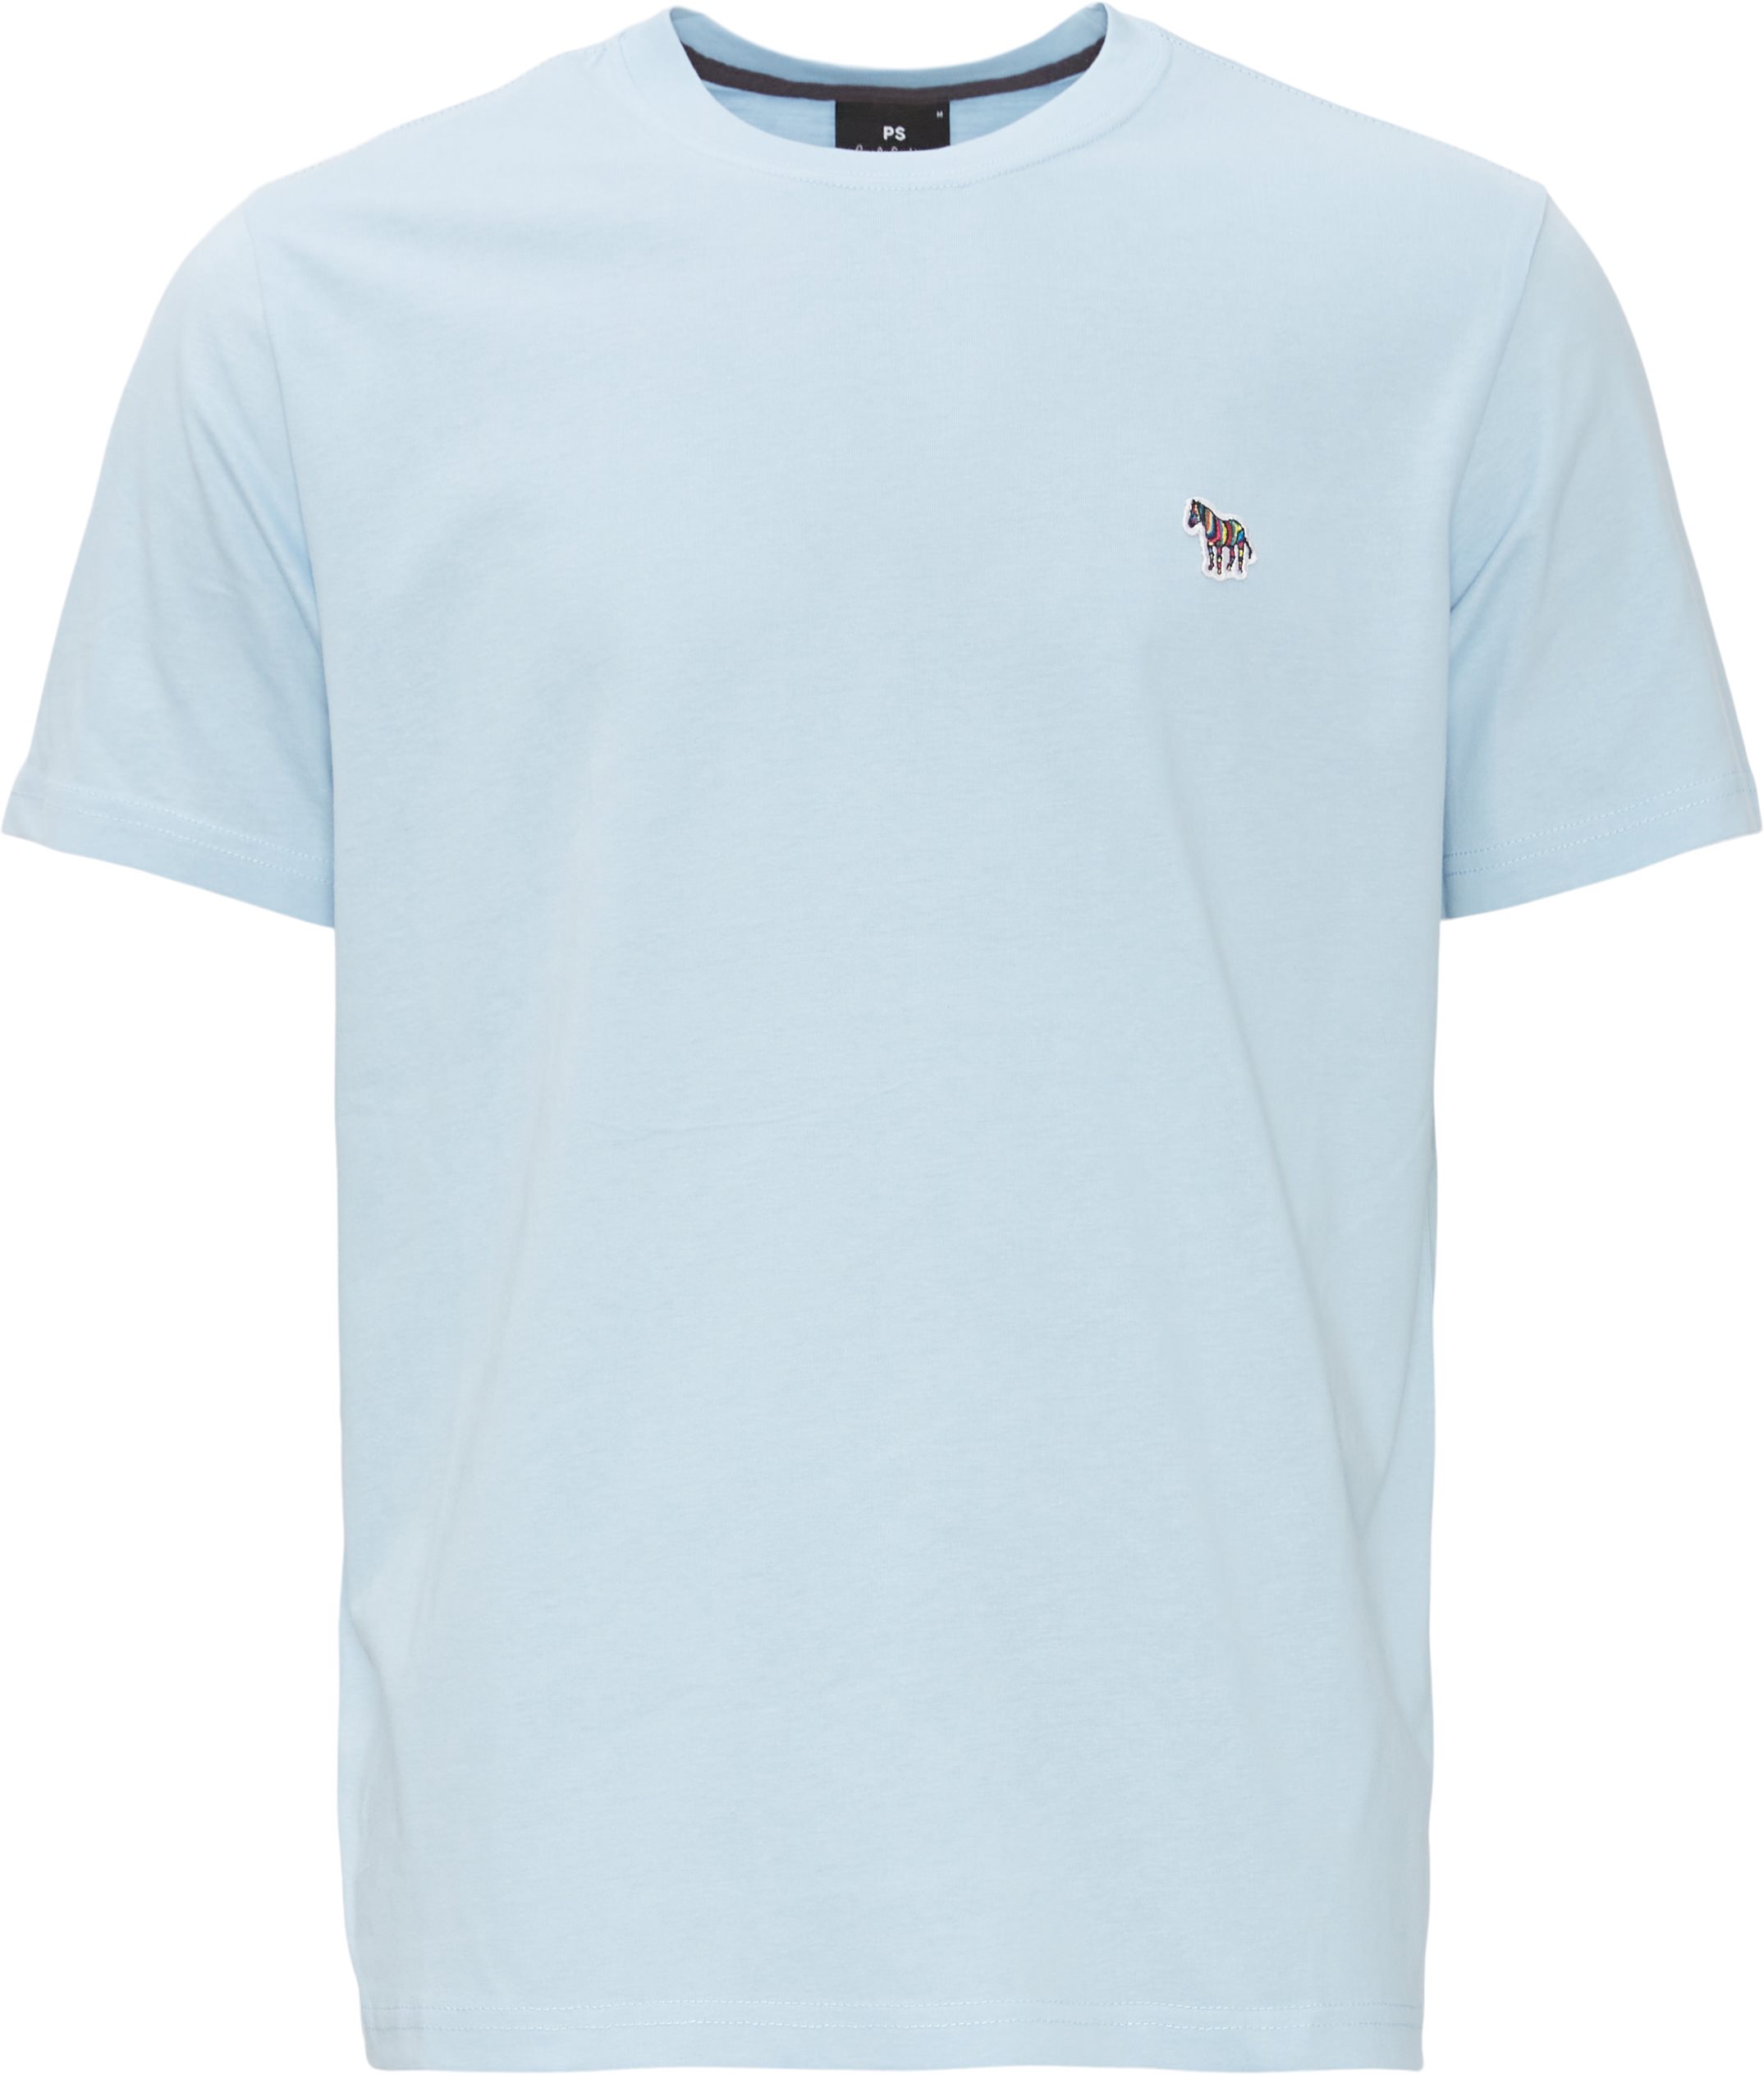 Zebra T-shirt - T-shirts - Regular fit - Blå